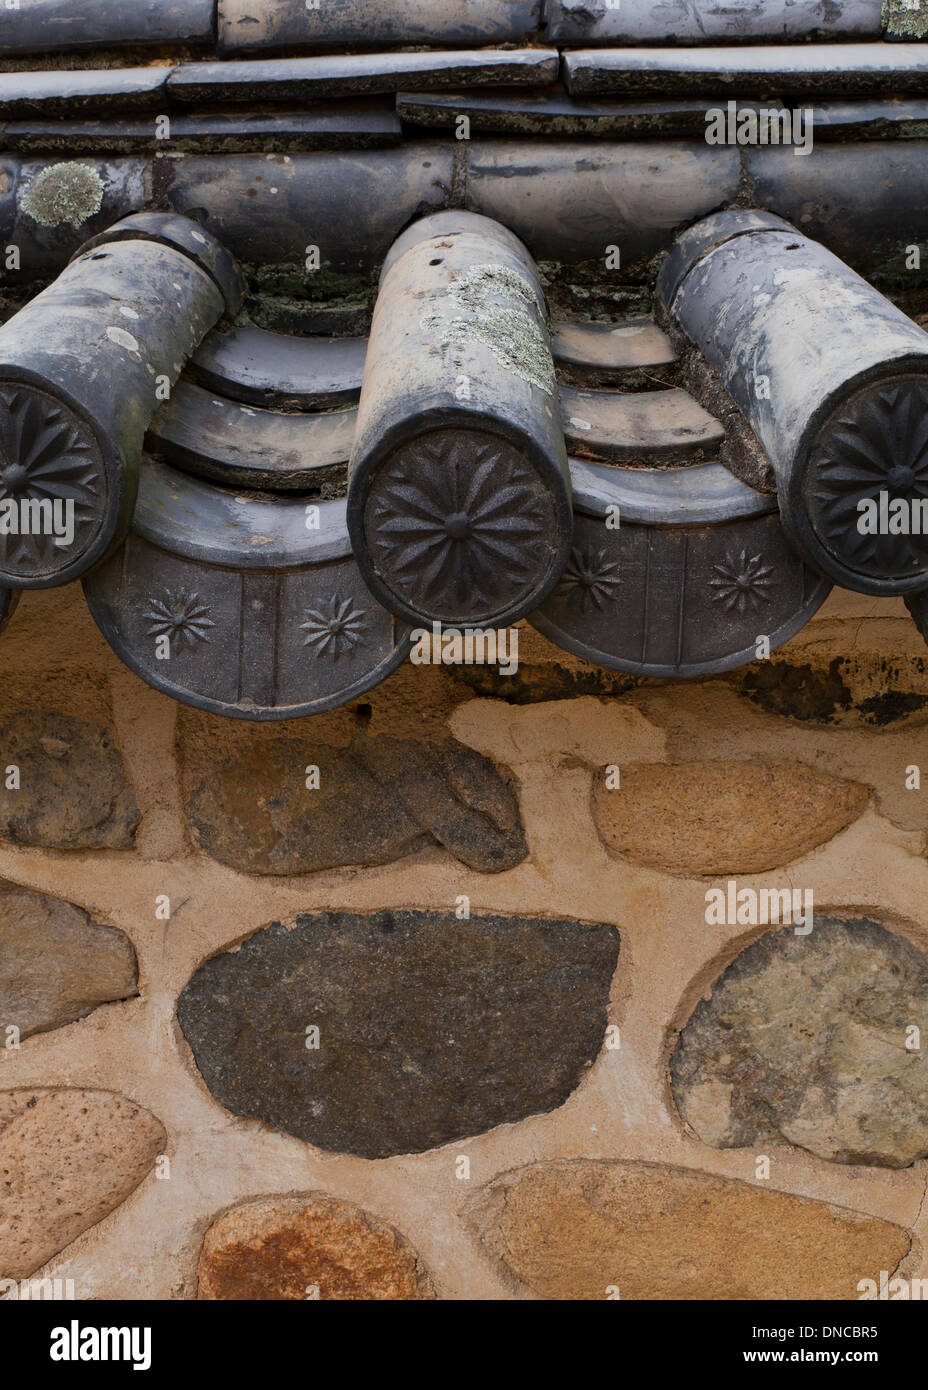 Giwa (creta sparata tegole) utilizzato in tradizionale stile Hanok muro di pietra recinzione - Gyeongju, Corea del Sud Foto Stock